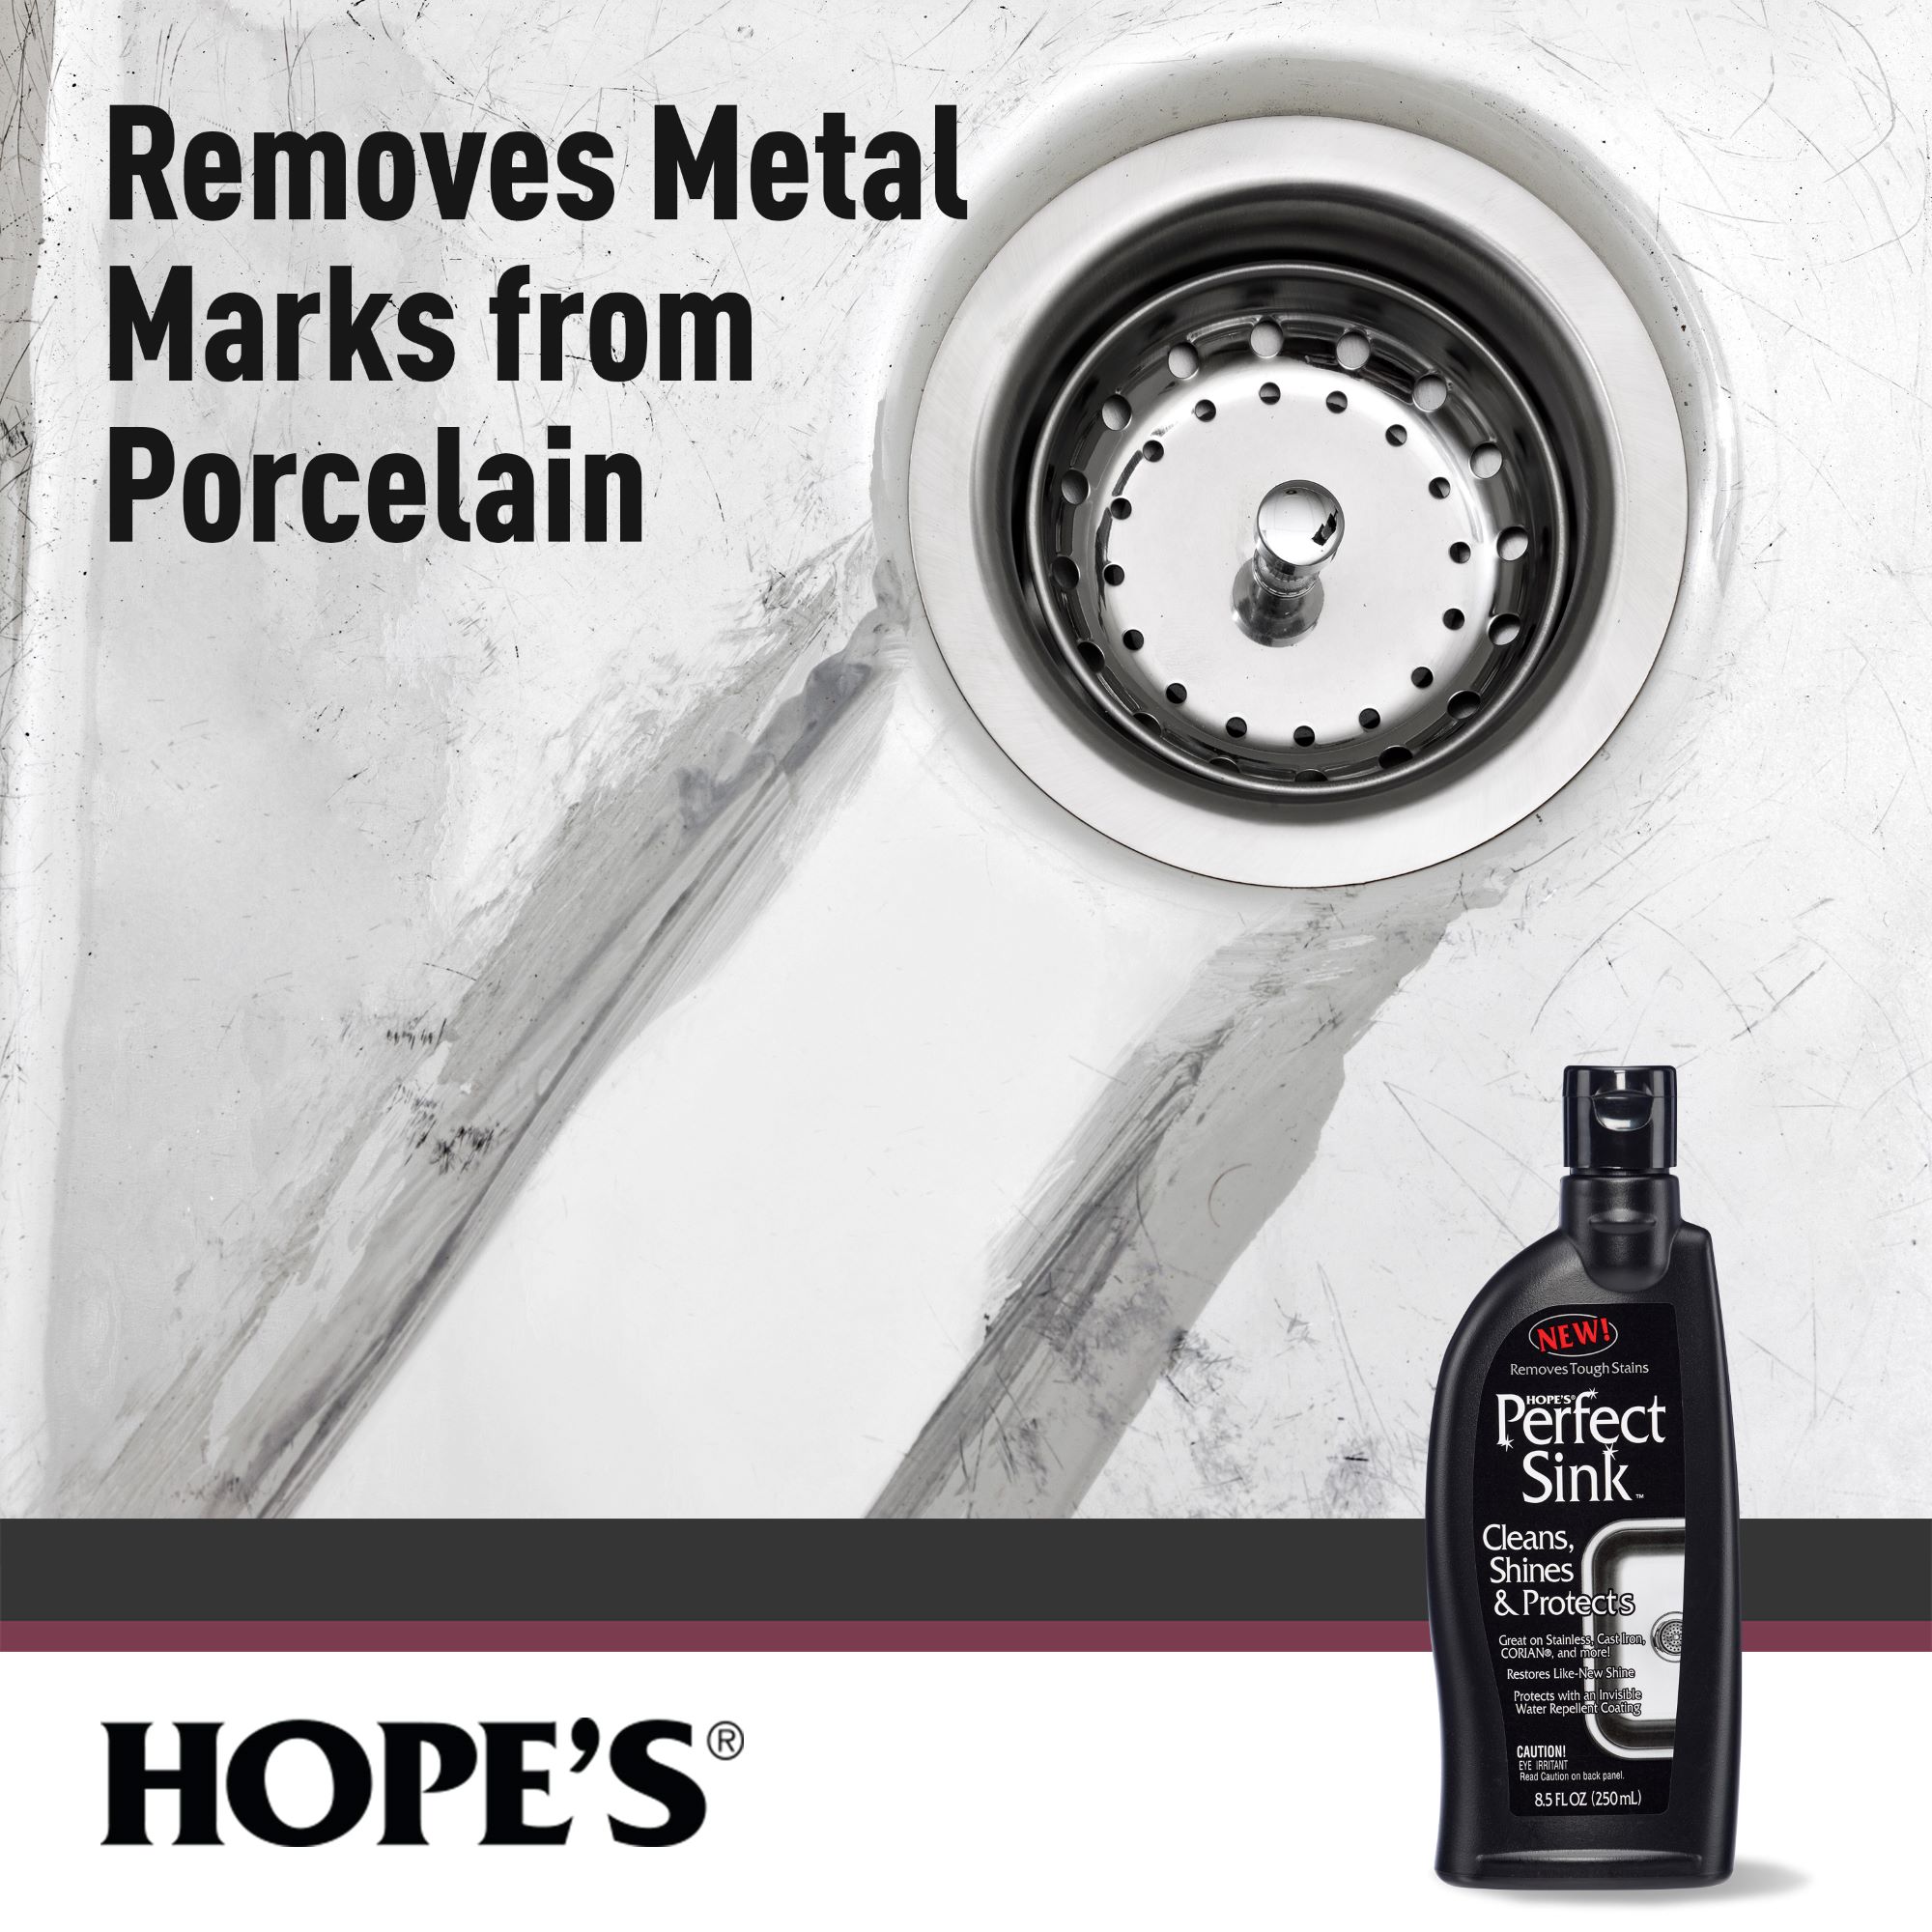 Hope's 8.5-fl oz Herbal Stainless Steel Cleaner